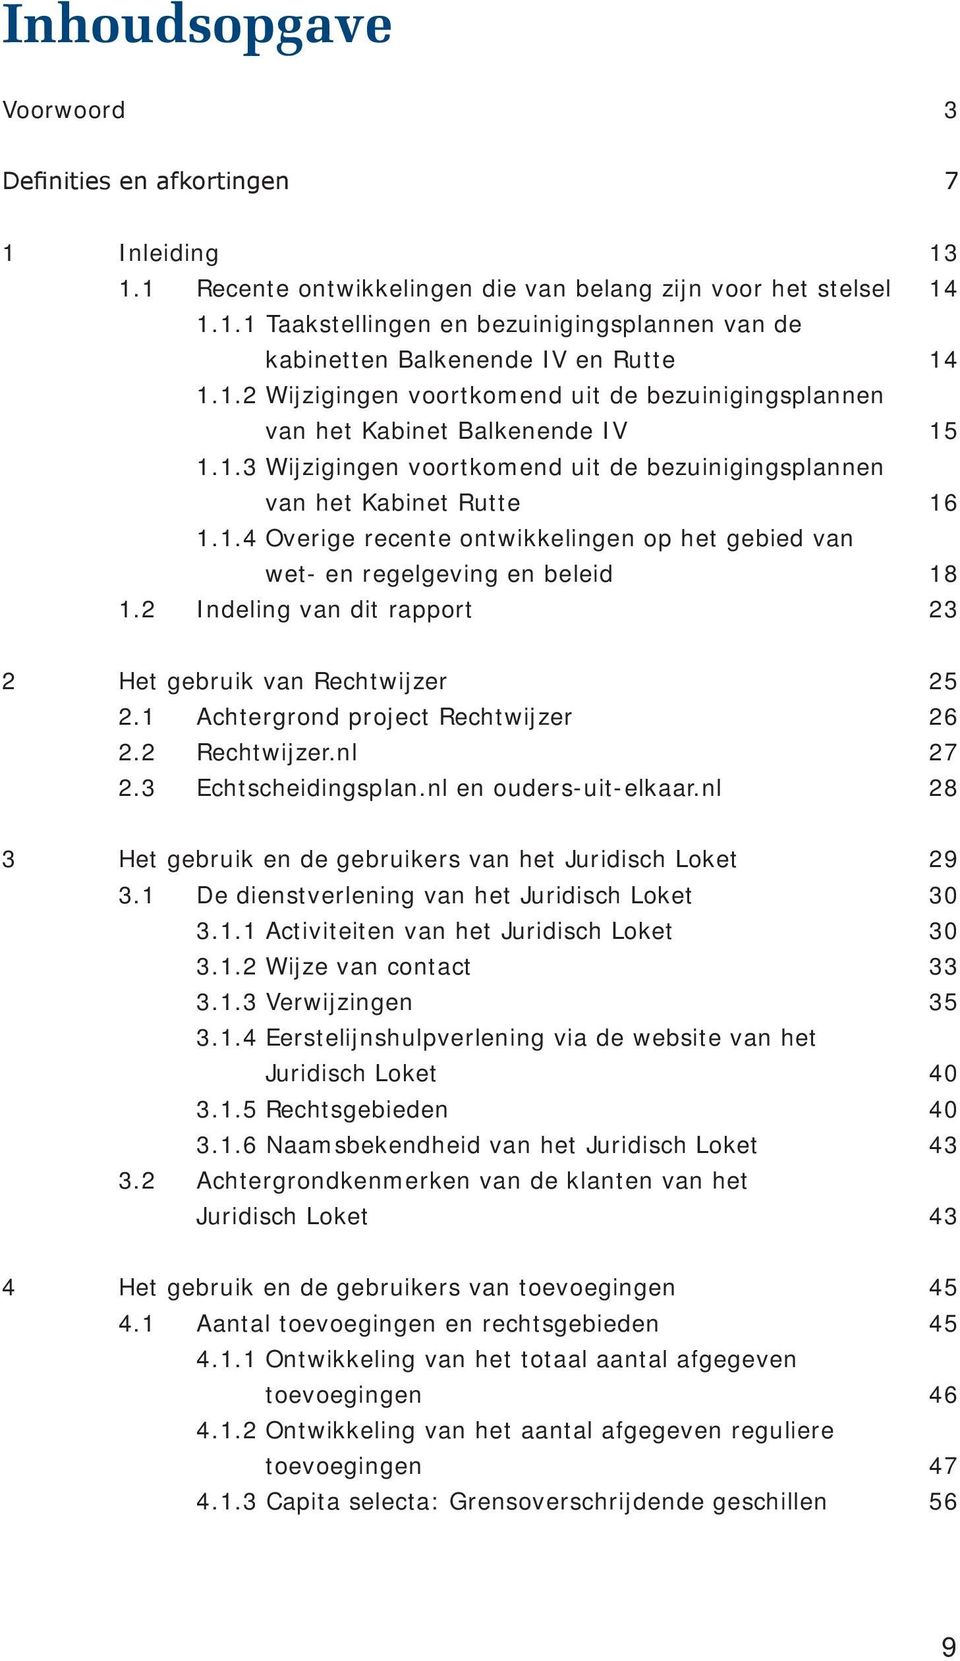 2 Indeling van dit rapport 23 2 Het gebruik van Rechtwijzer 25 2.1 Achtergrond project Rechtwijzer 26 2.2 Rechtwijzer.nl 27 2.3 Echtscheidingsplan.nl en ouders-uit-elkaar.